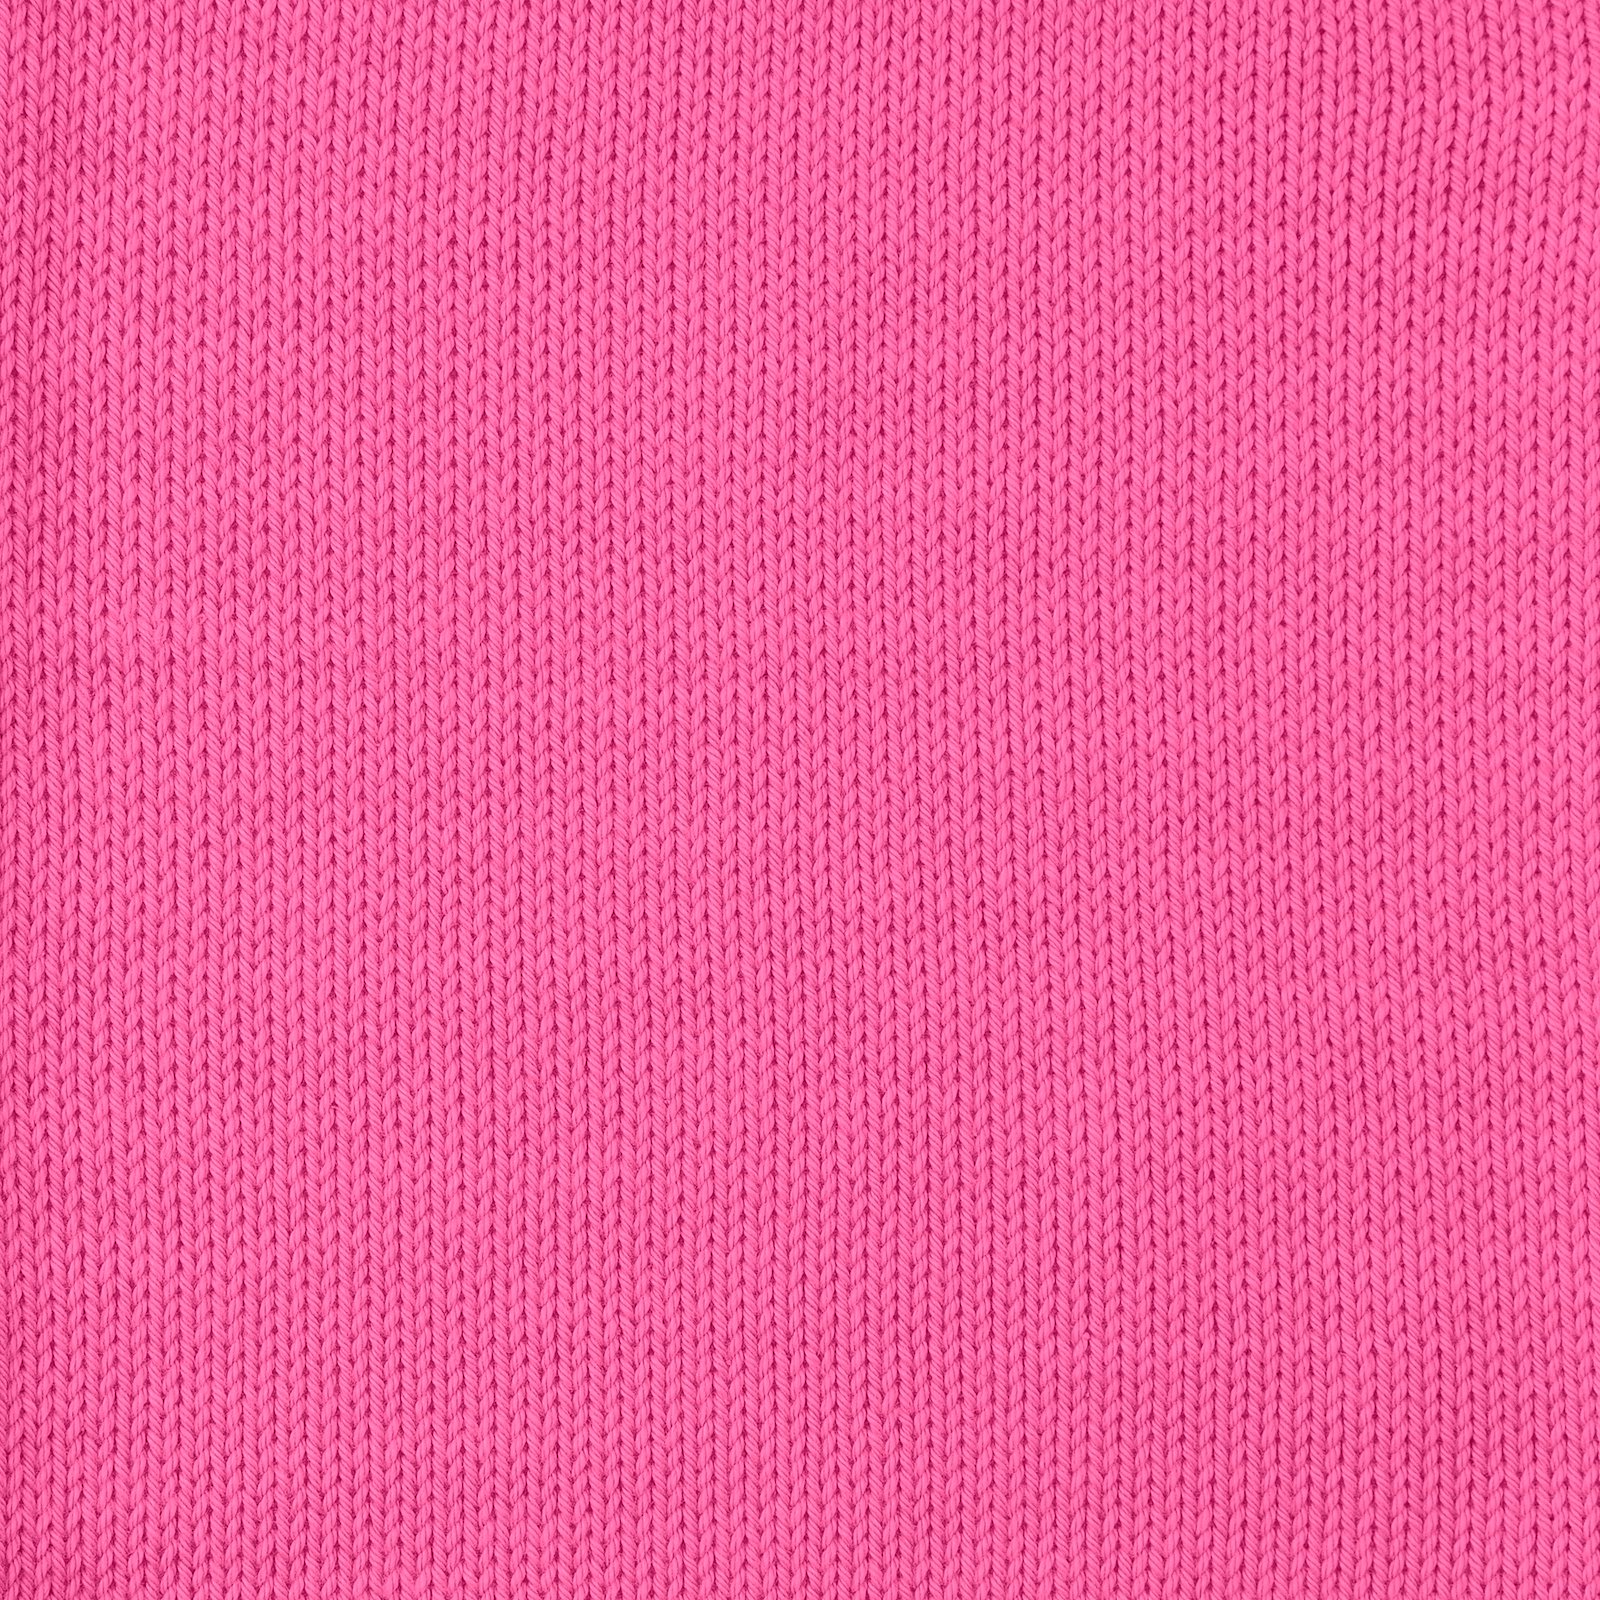 FRAYA, 100% cotton yarn "Colourful", pink 90060010_sskit